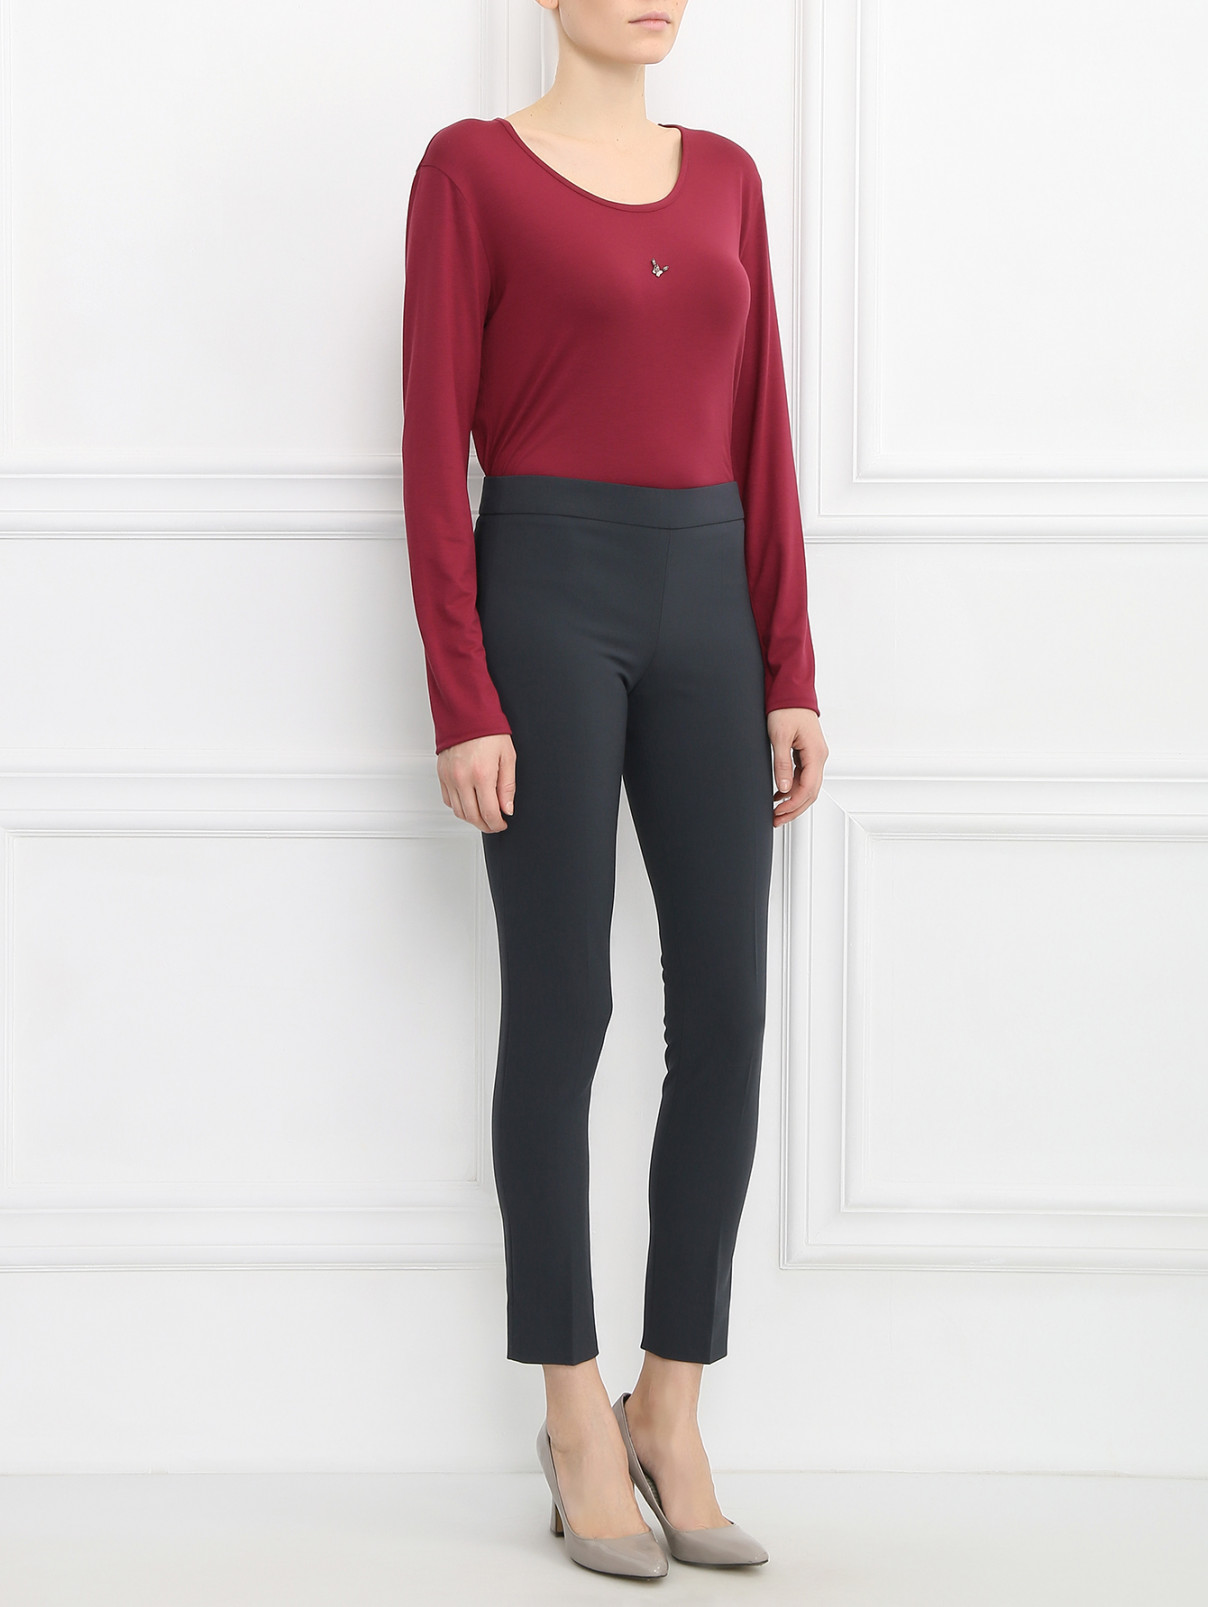 Зауженные брюки из шерсти Emporio Armani  –  Модель Общий вид  – Цвет:  Серый